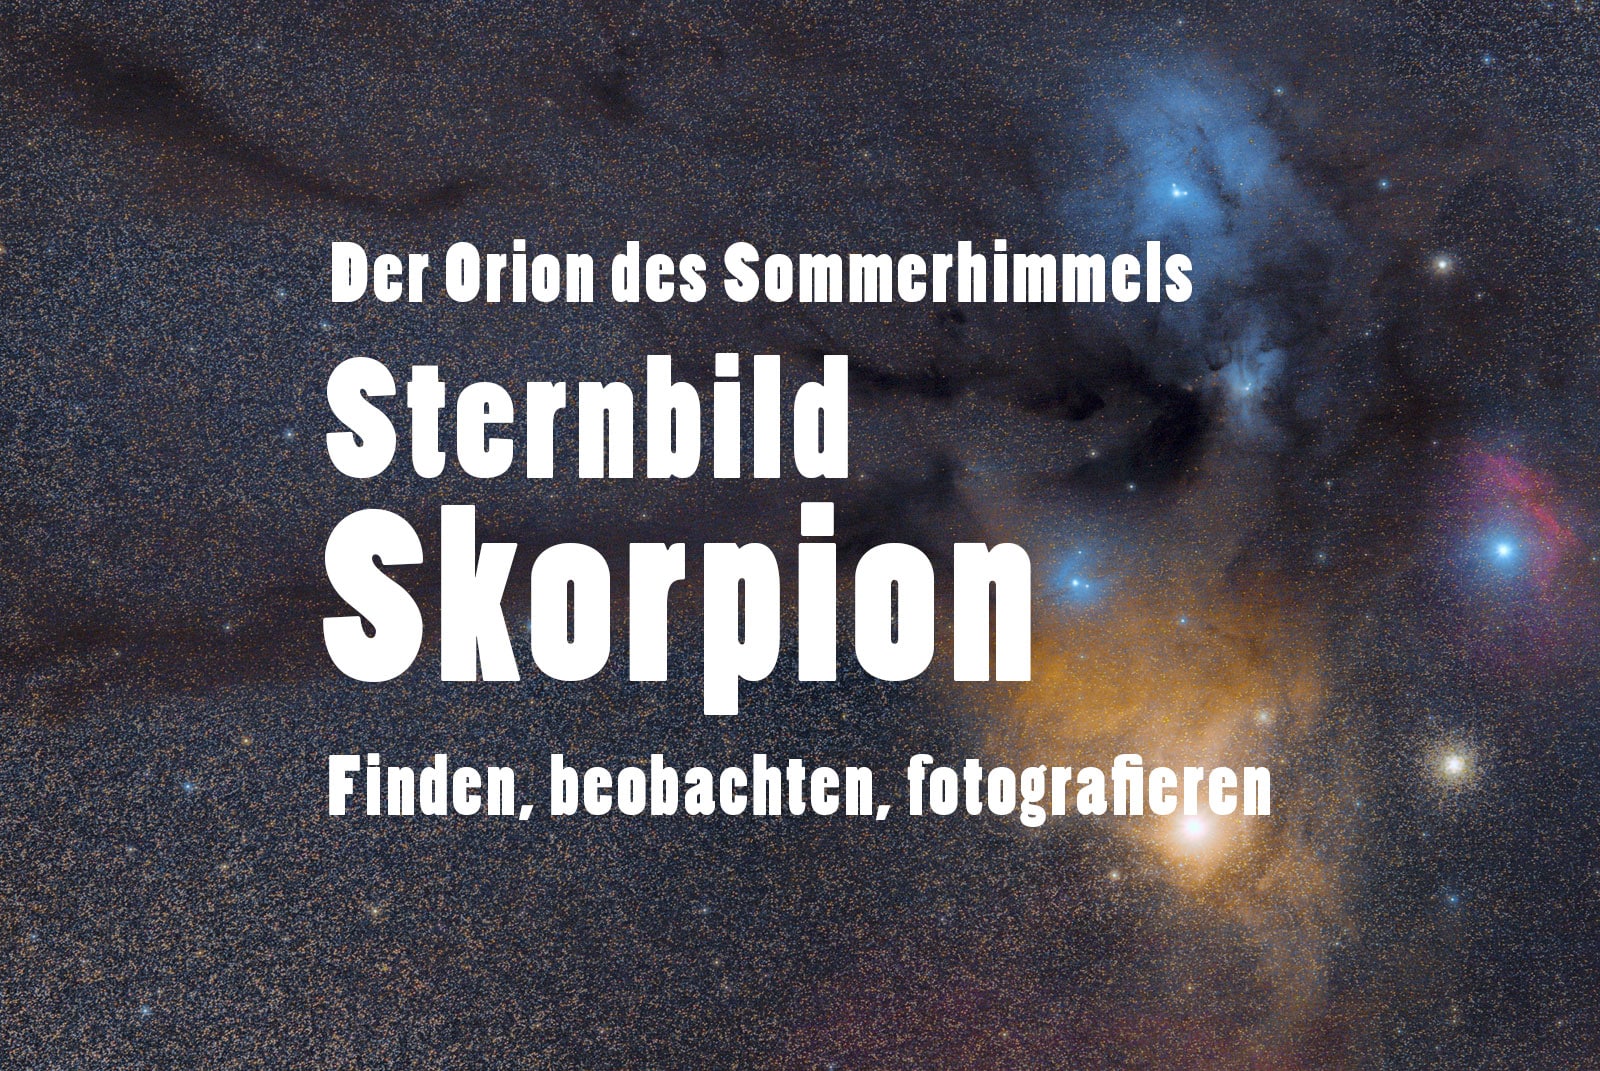 Sternbild Skorpion, Antares, Deep-Sky-Objekte und Nebel - finden, beobachten und fotografierenen - Anleitung, Tutorial, Tipps, TITELBILD